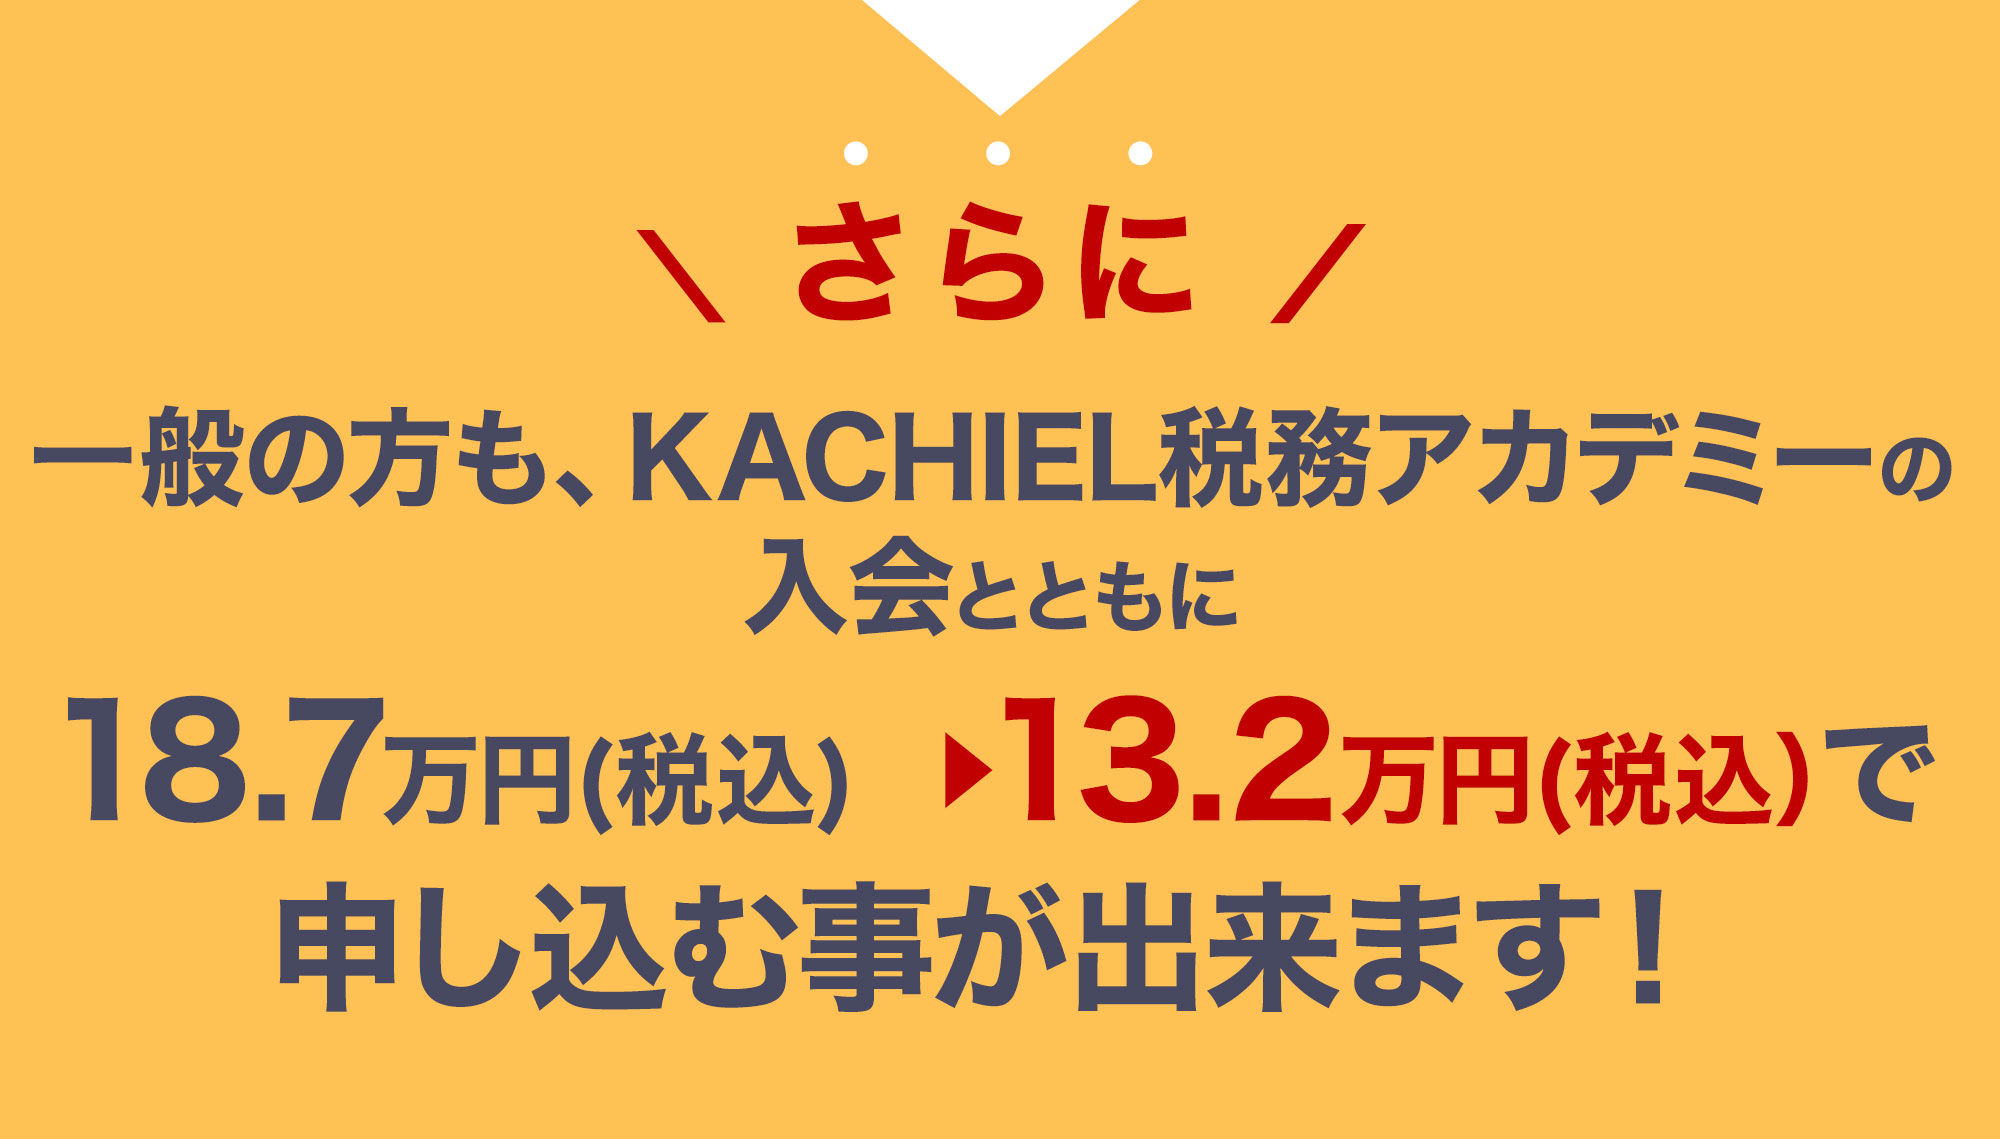 さらに一般の方も、KACHIEL税務アカデミーの入会とともに26万円（税別）から10万円（税別）で申し込む事が出来ます！